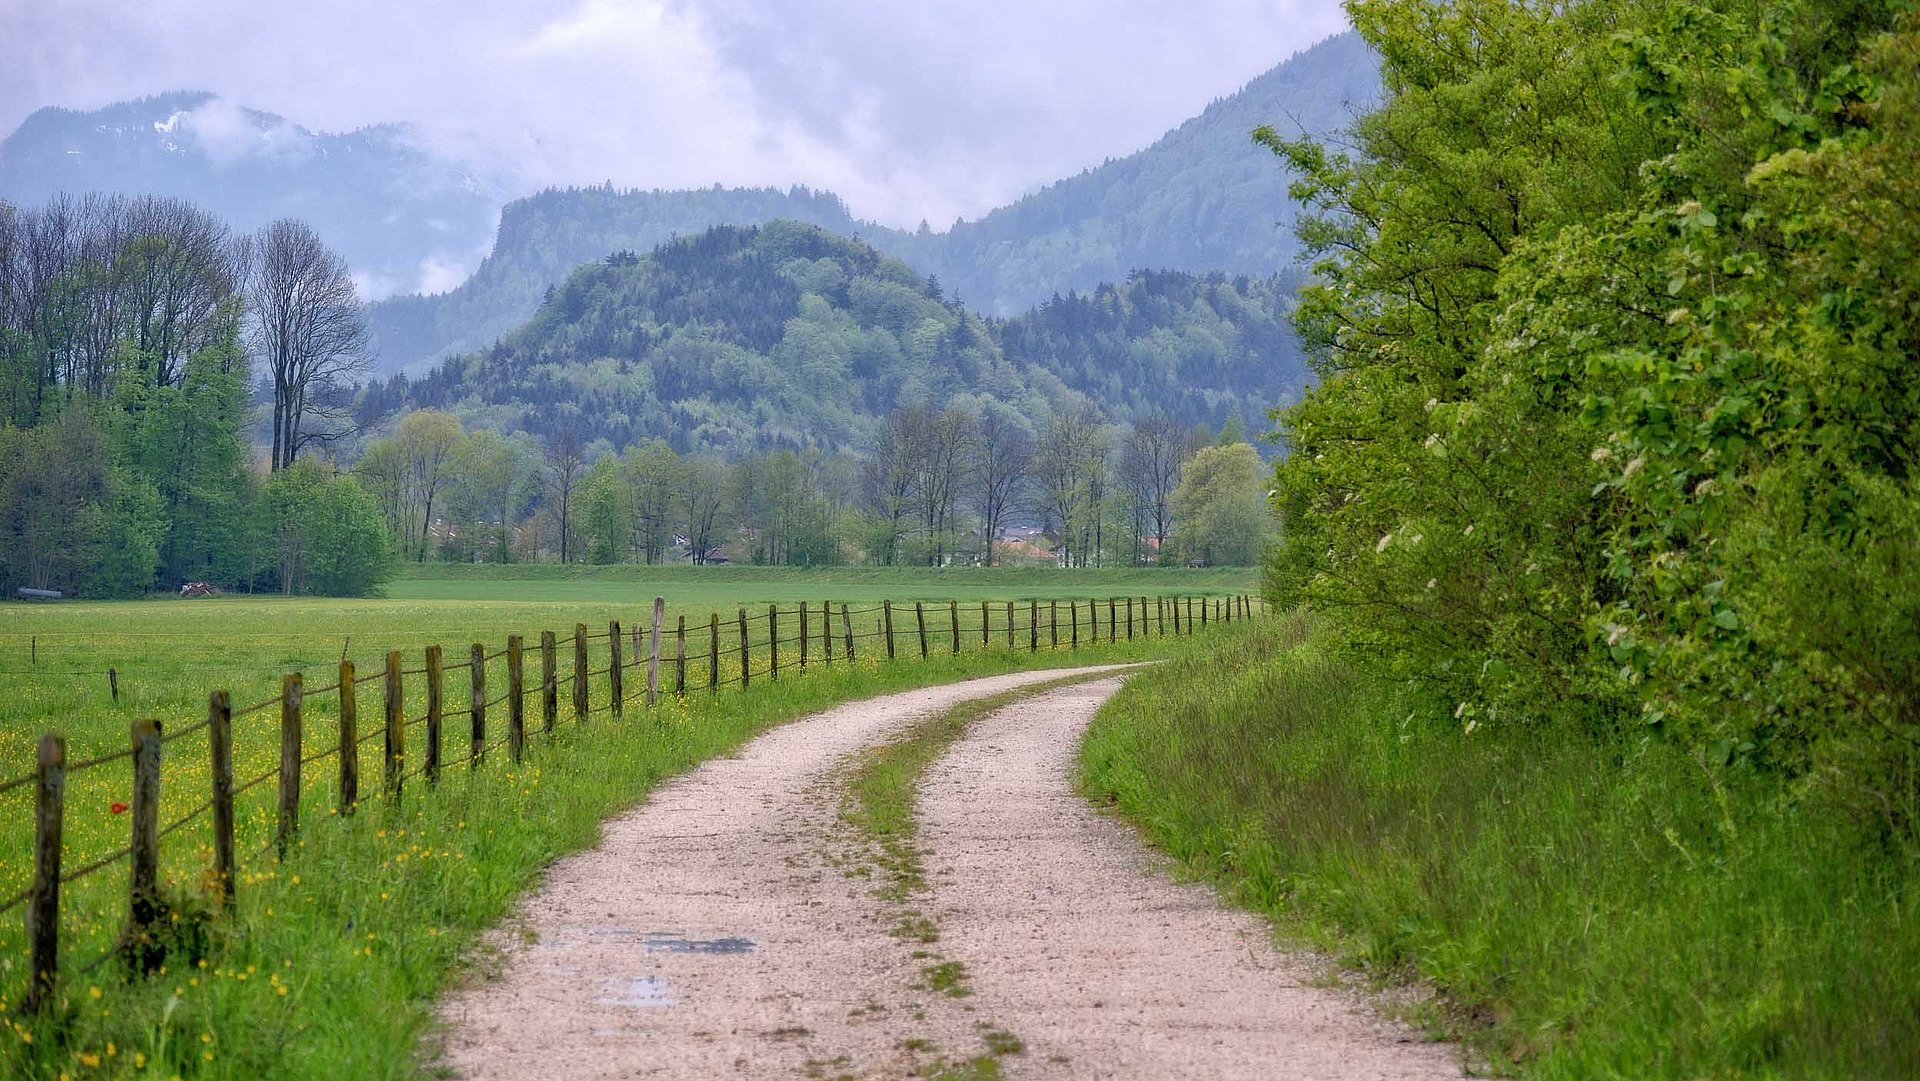 Freizeit und Sport in Oberbayern - Wanderpfad in grüner Landschaft mit Hügeln und Bergen im Hintergrund